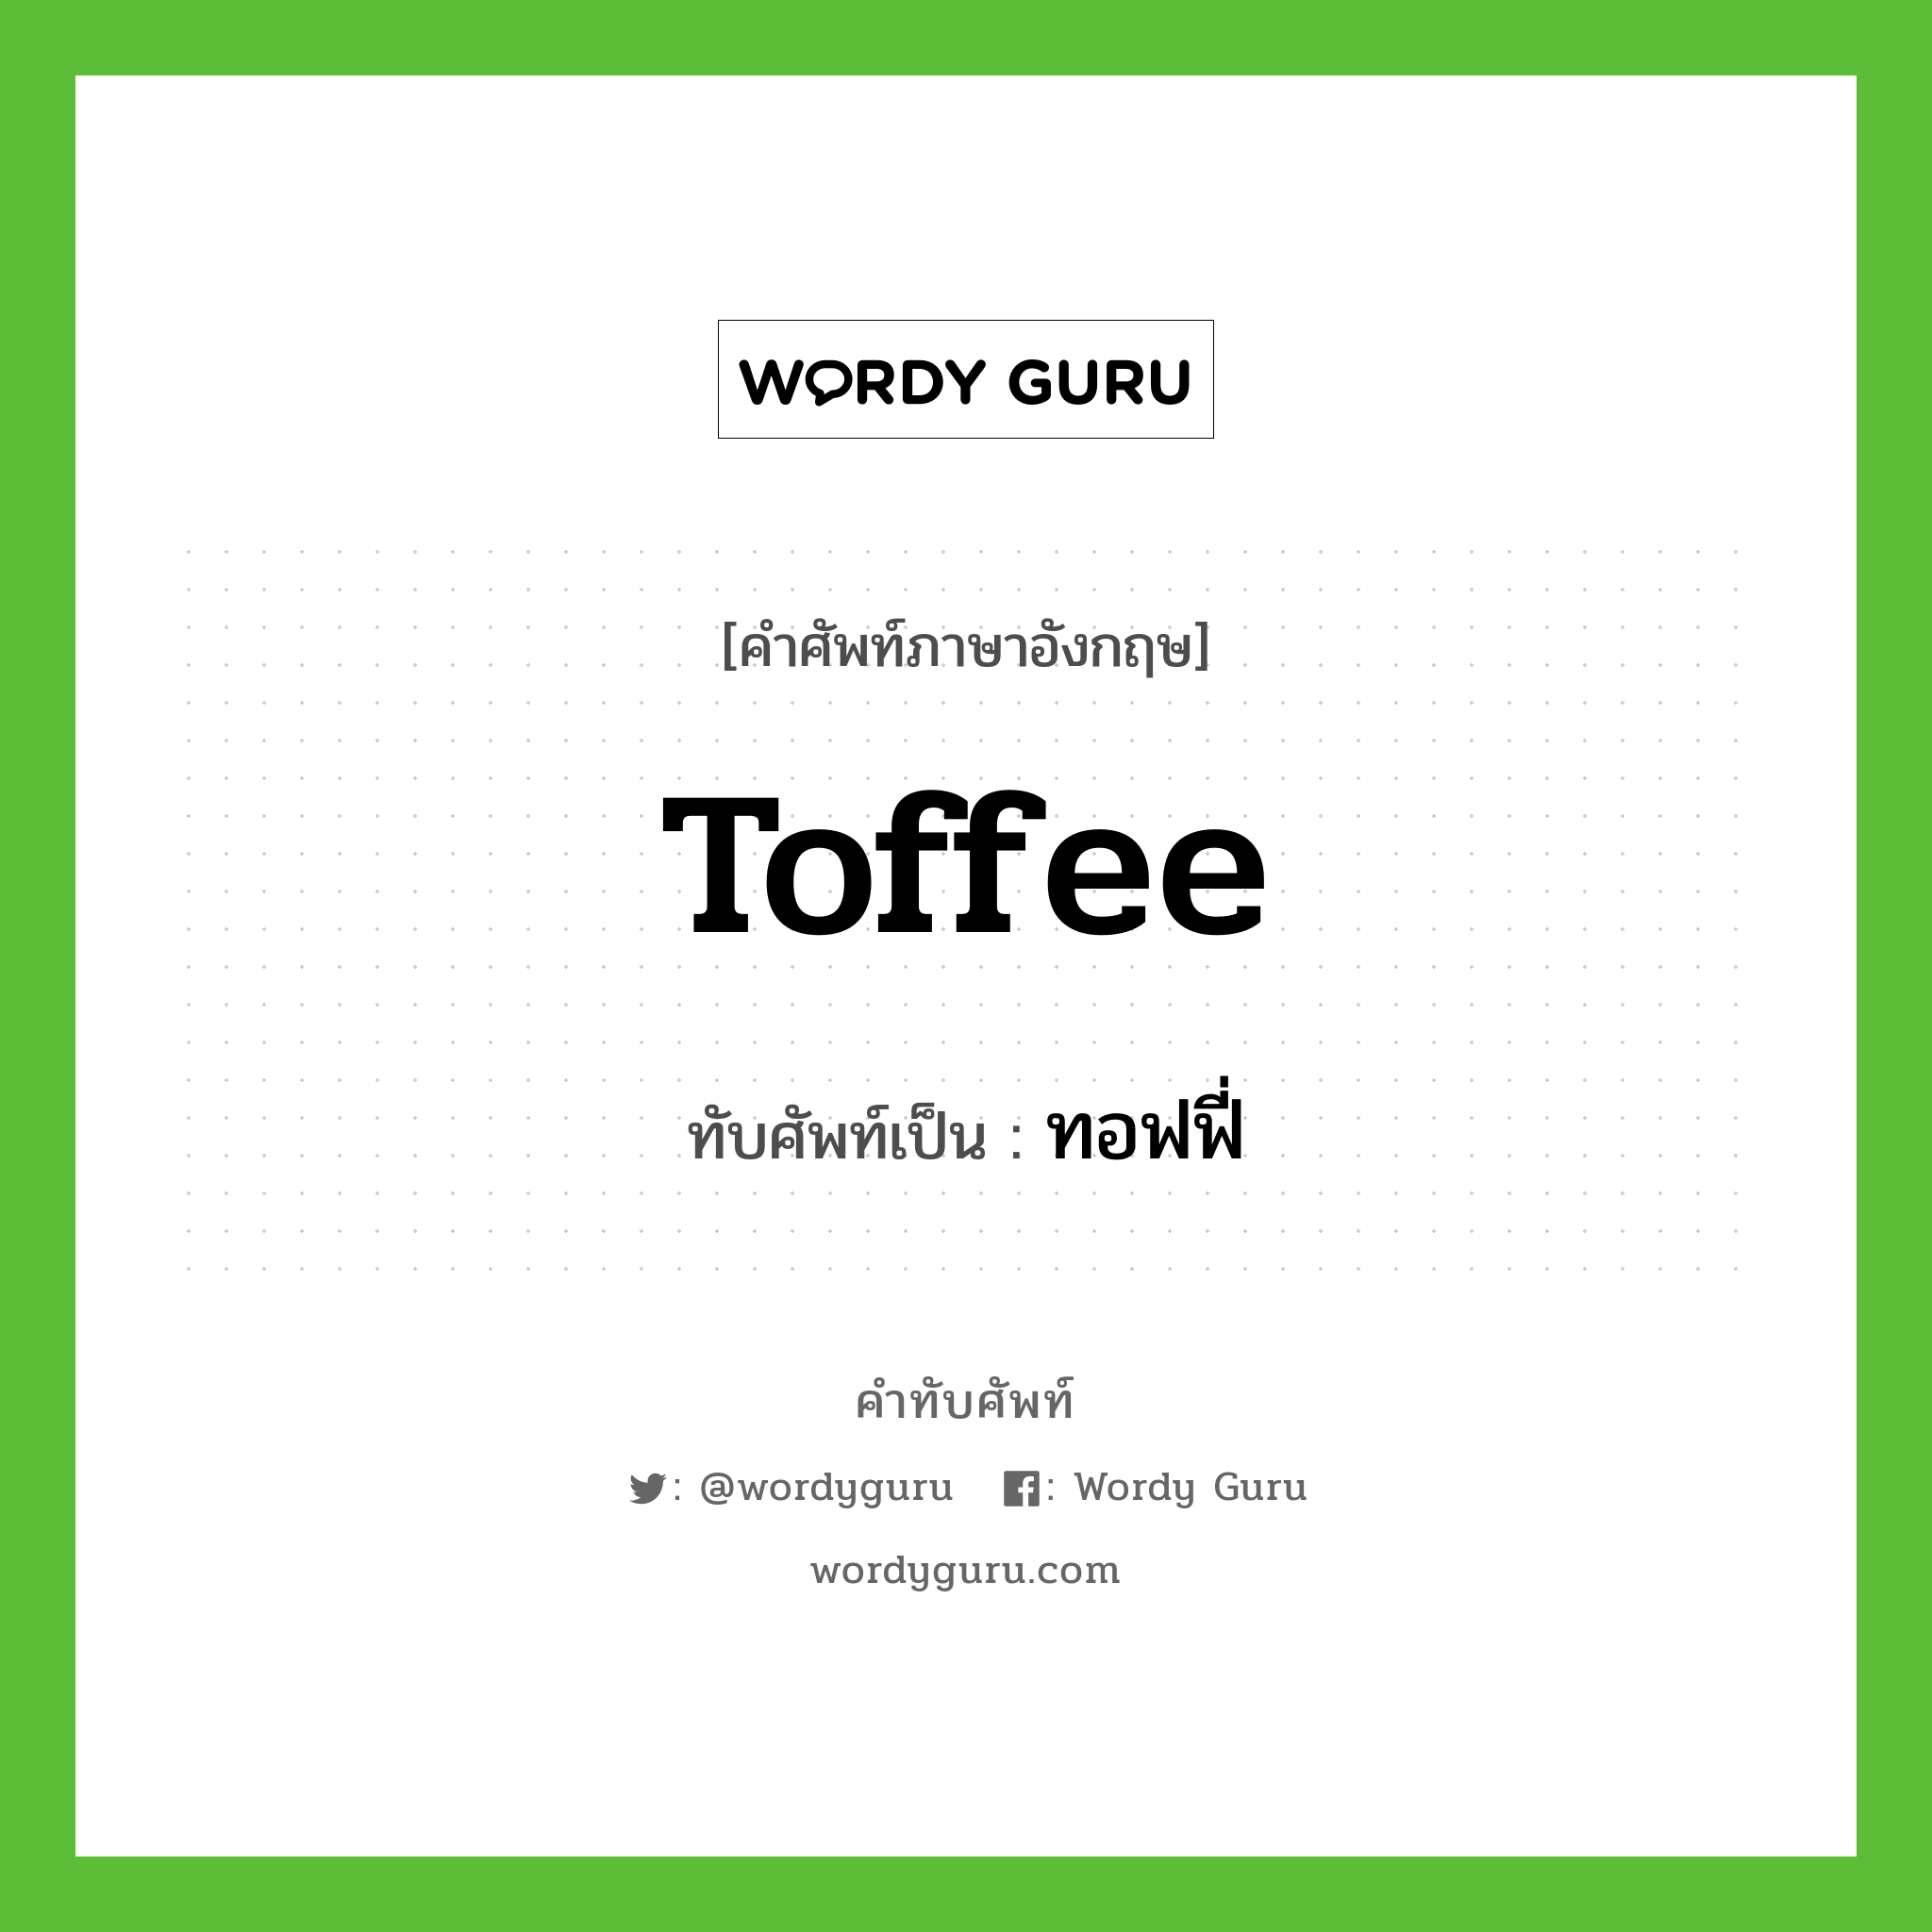 toffee เขียนเป็นคำไทยว่าอะไร?, คำศัพท์ภาษาอังกฤษ toffee ทับศัพท์เป็น ทอฟฟี่